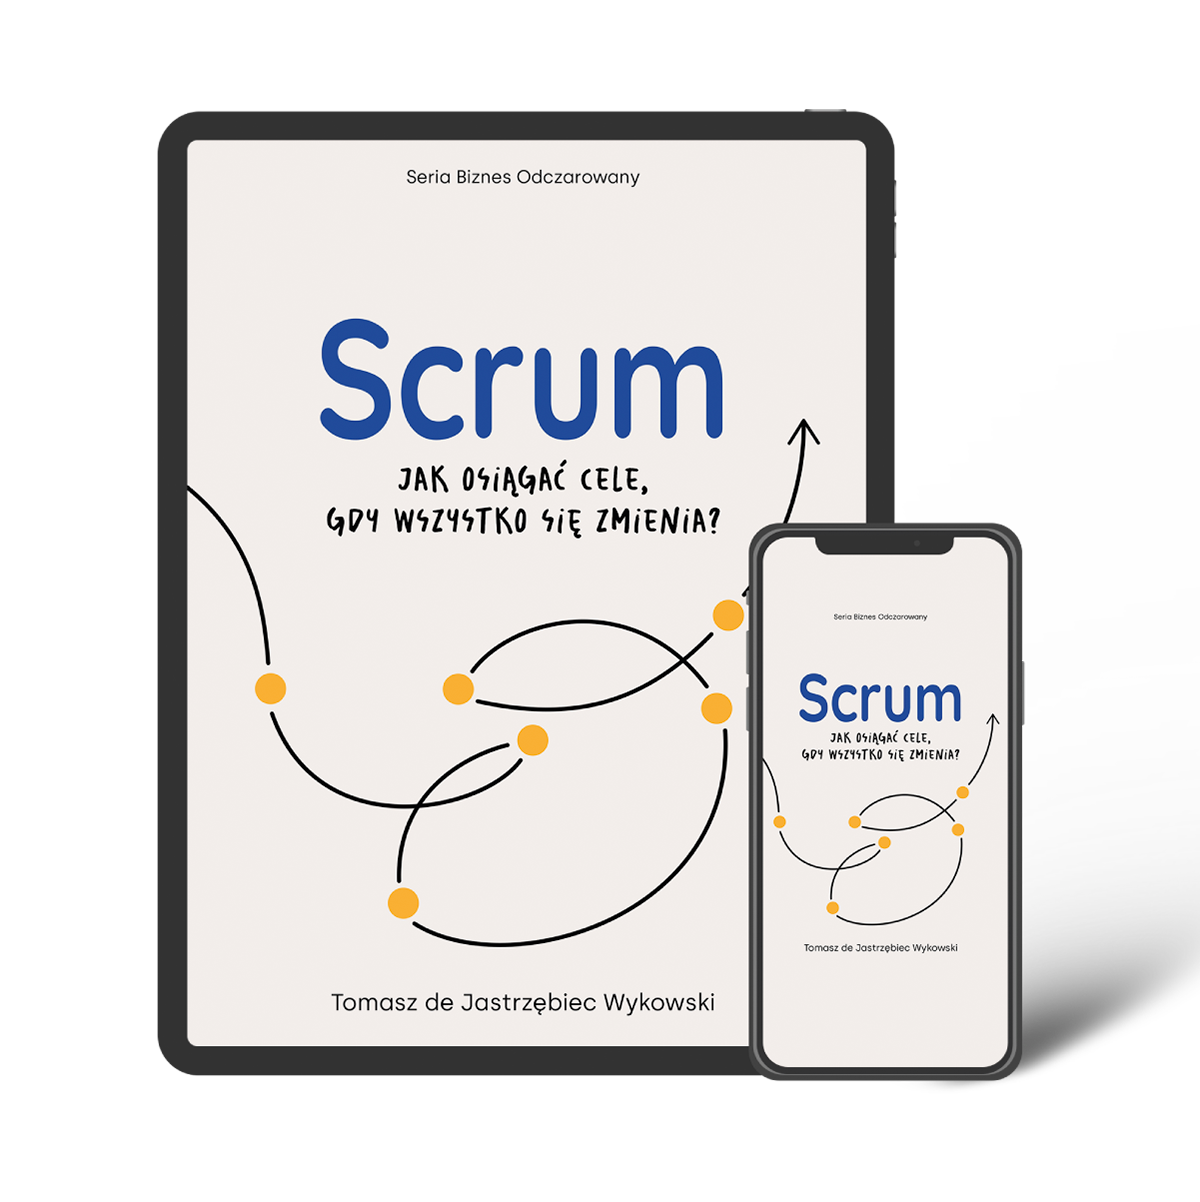 Ebook "Scrum: jak osiągać cele, gdy wszystko się zmienia?"